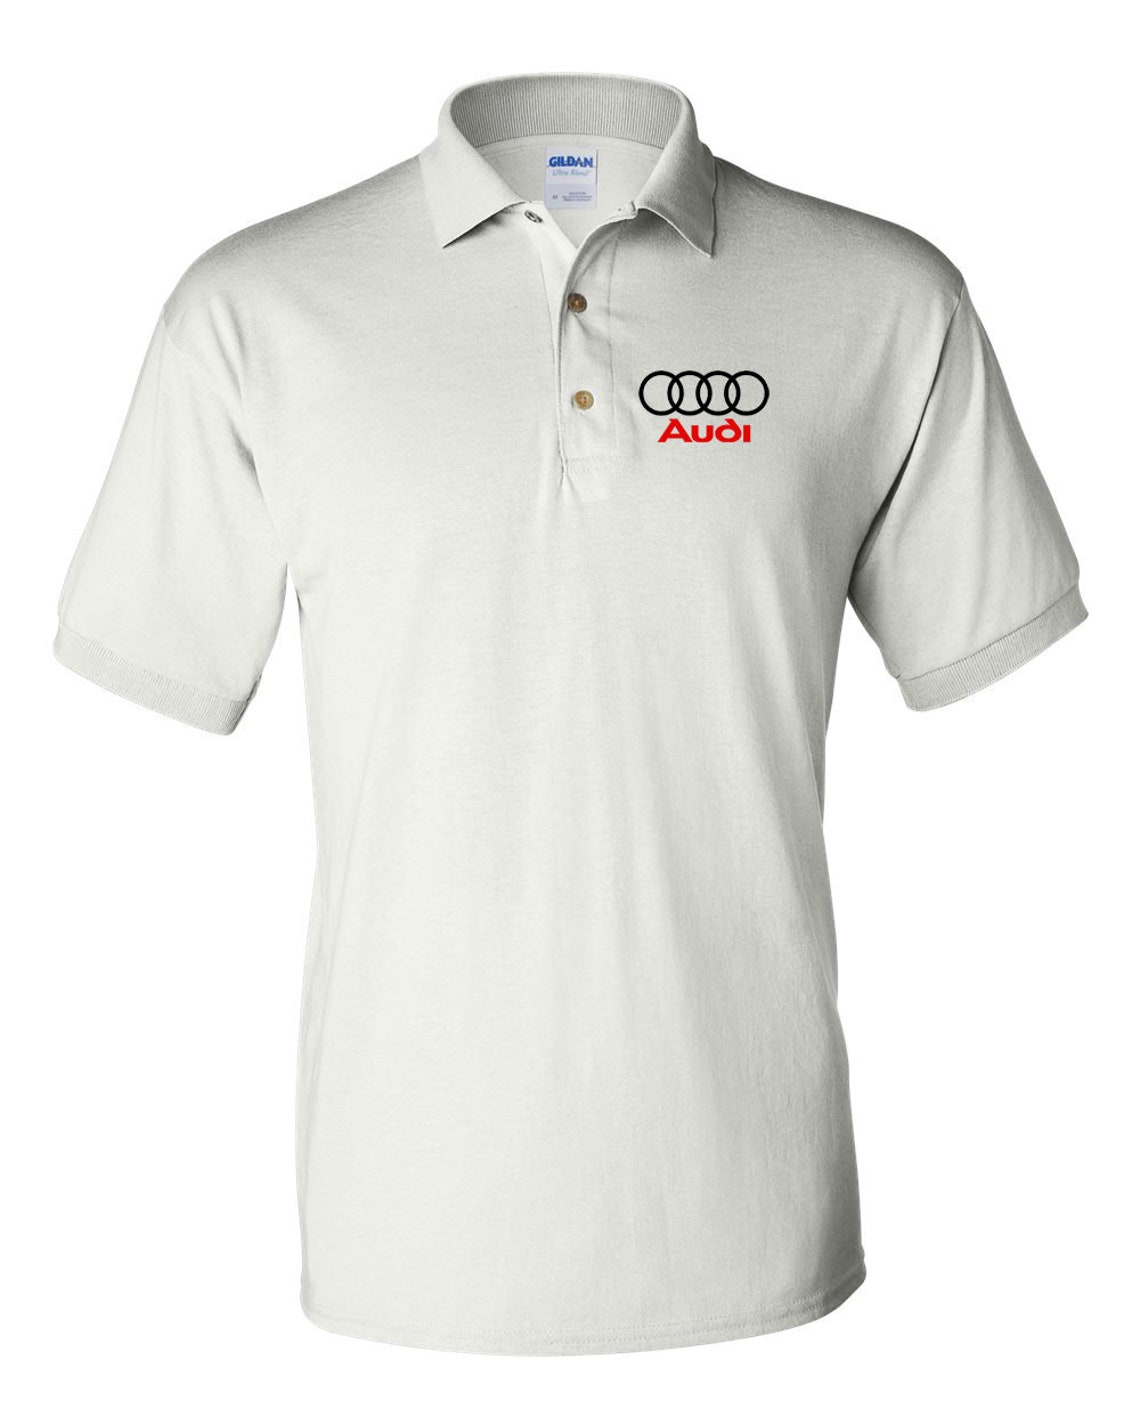 Audi Shirt Audi T-Shirt Audi Men's Polo Shirt | Etsy